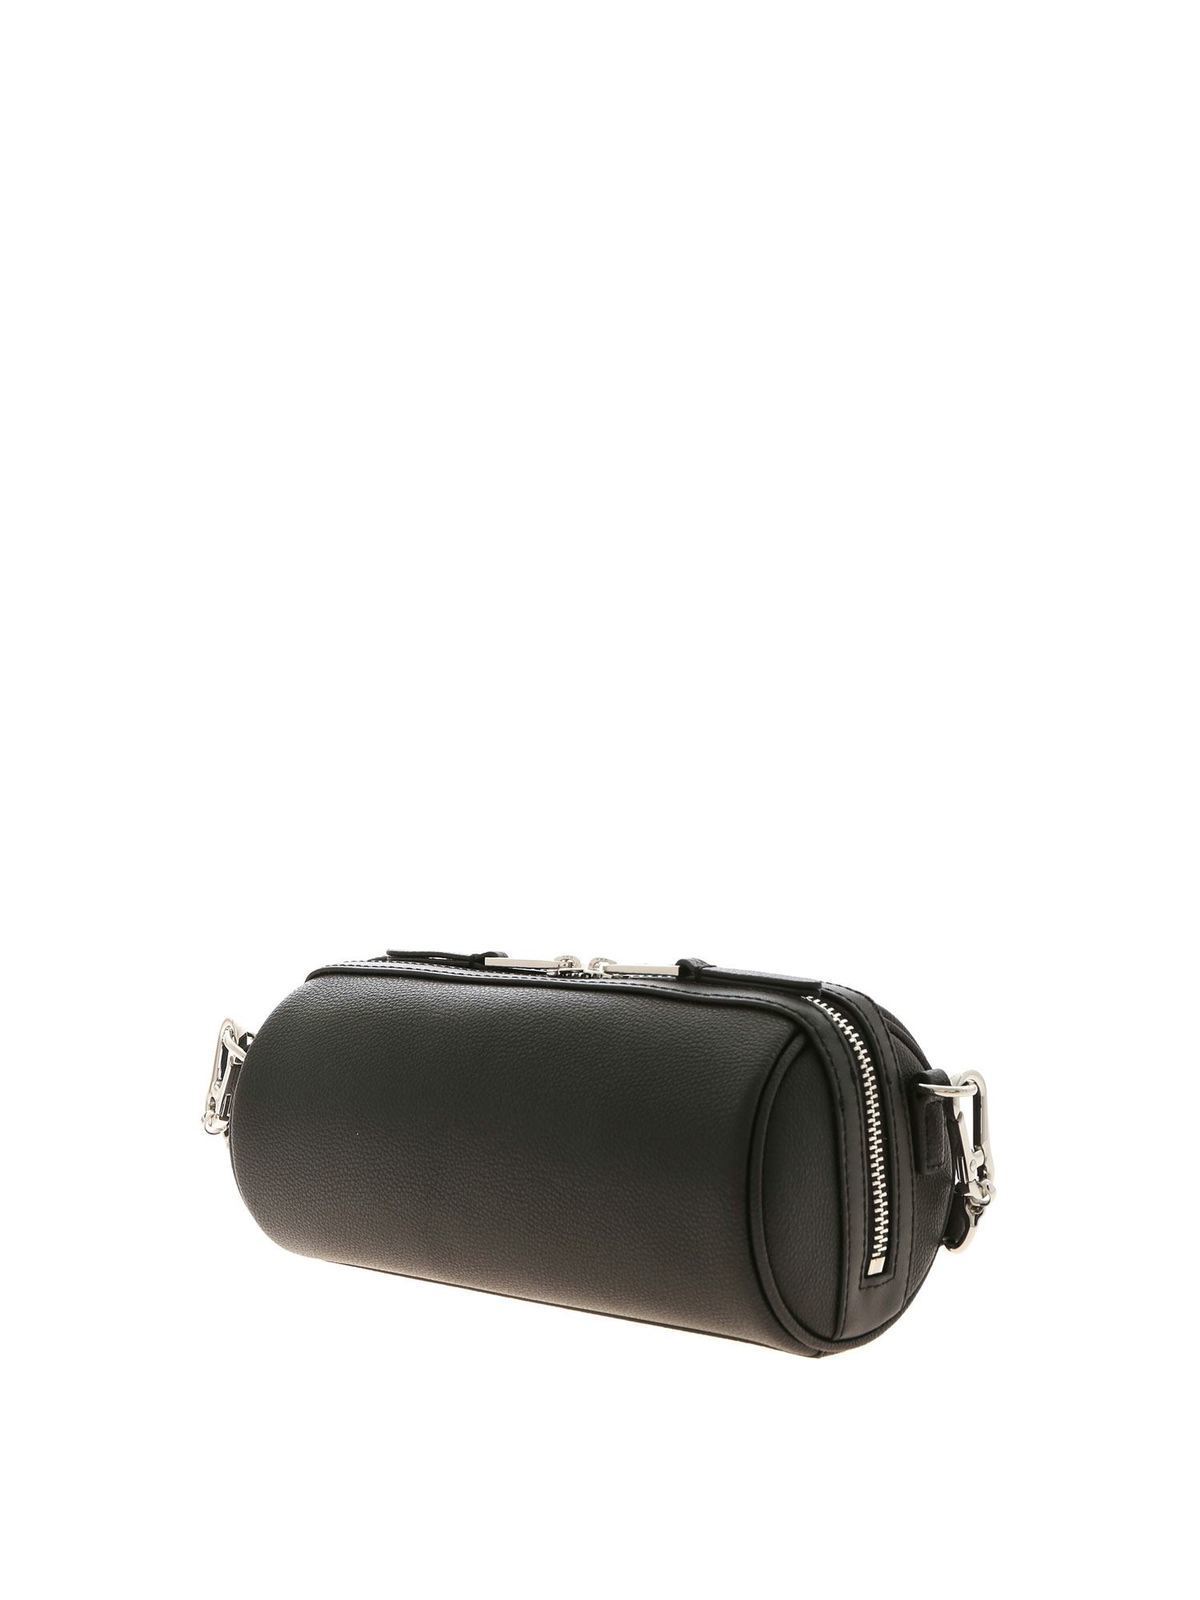 Cross body bags Karl Lagerfeld - Rue St Guillaume shoulder bag in black ...